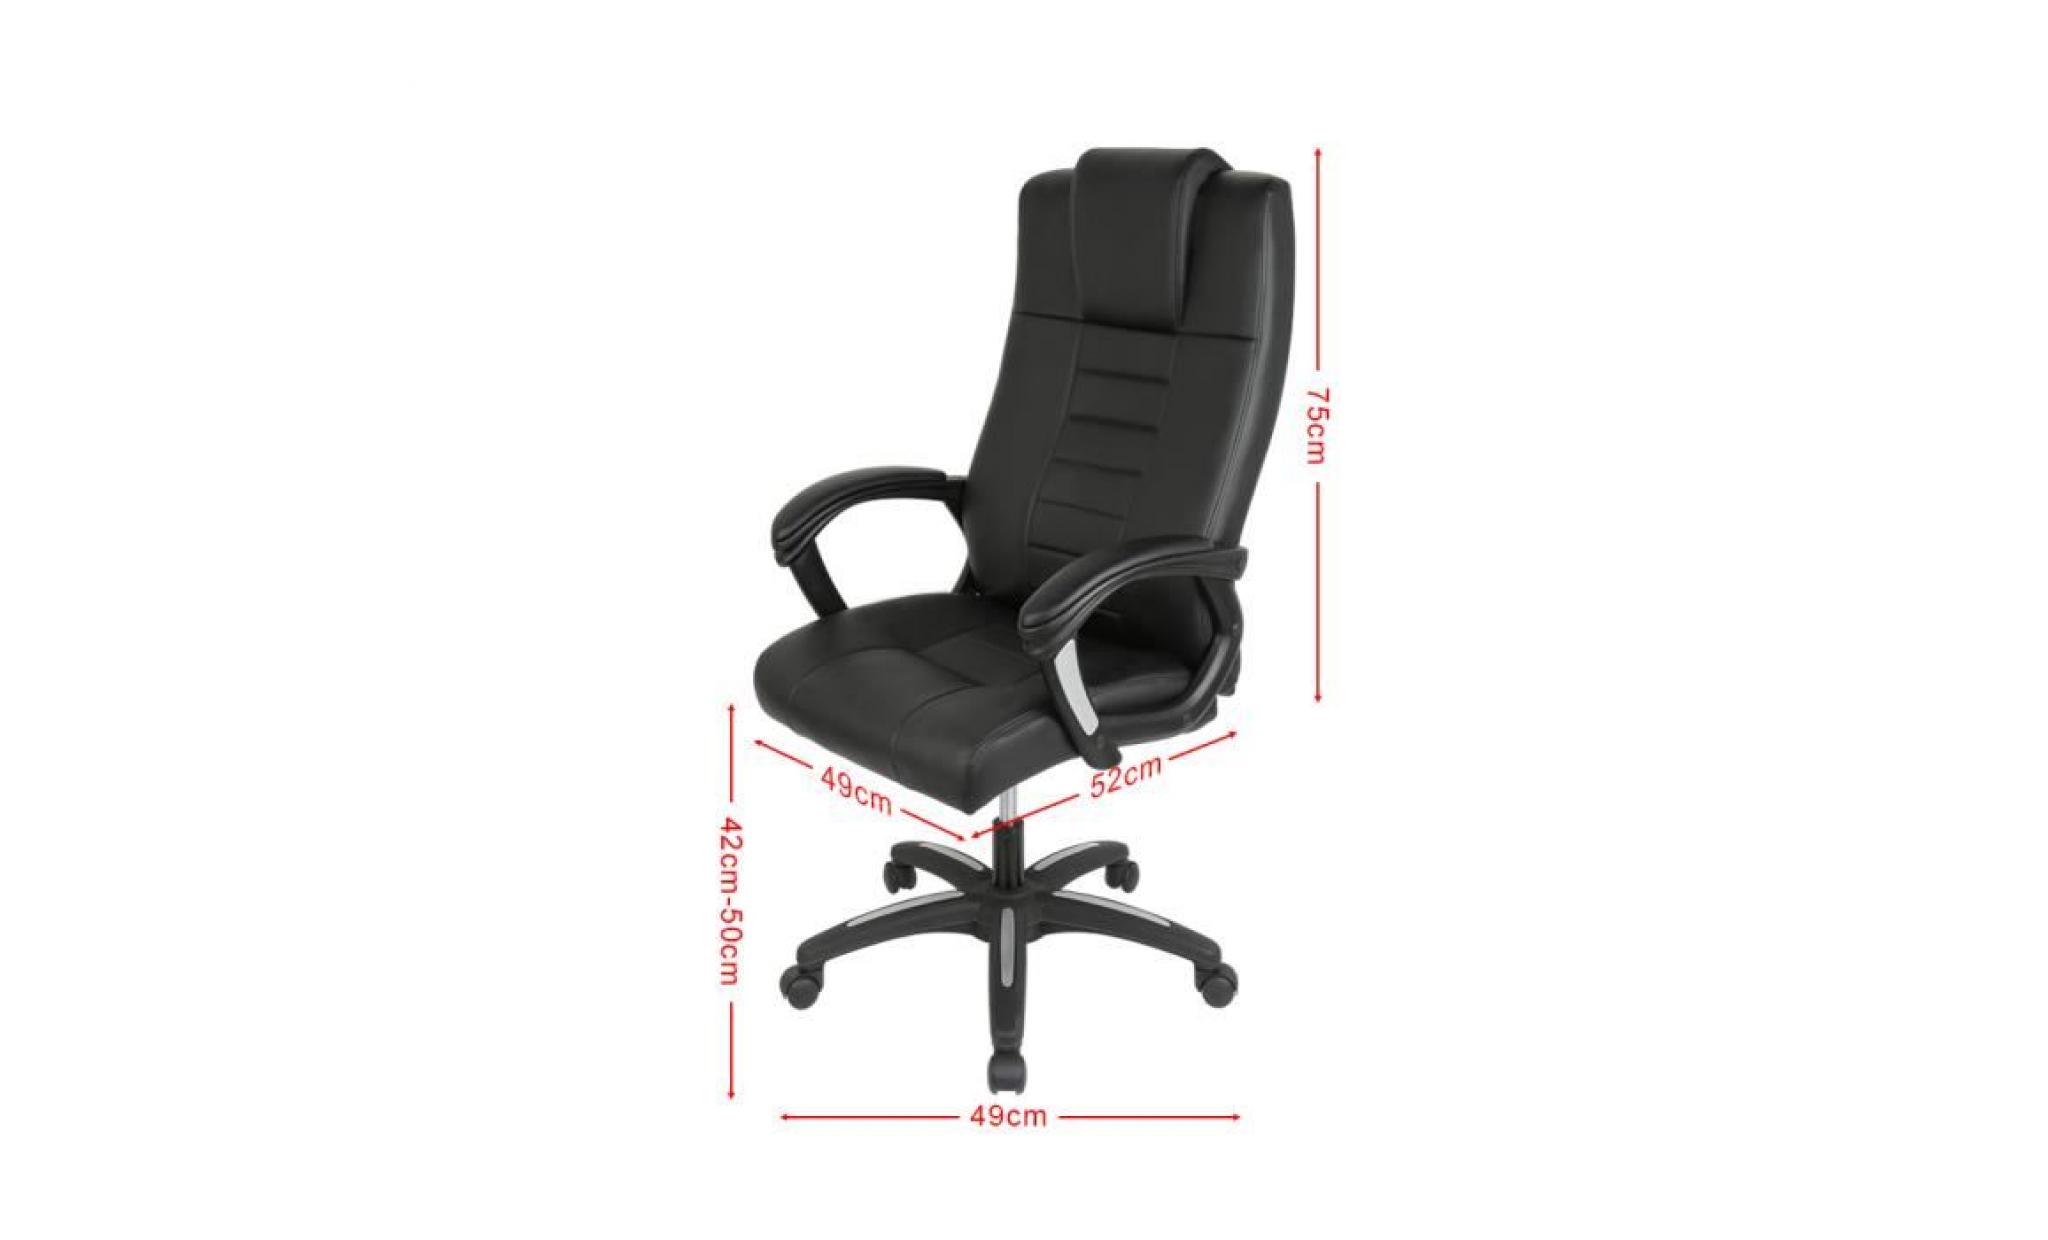 luxs chaise de gamer fauteuil de bureau siège ergonomique coussin confortable pas cher